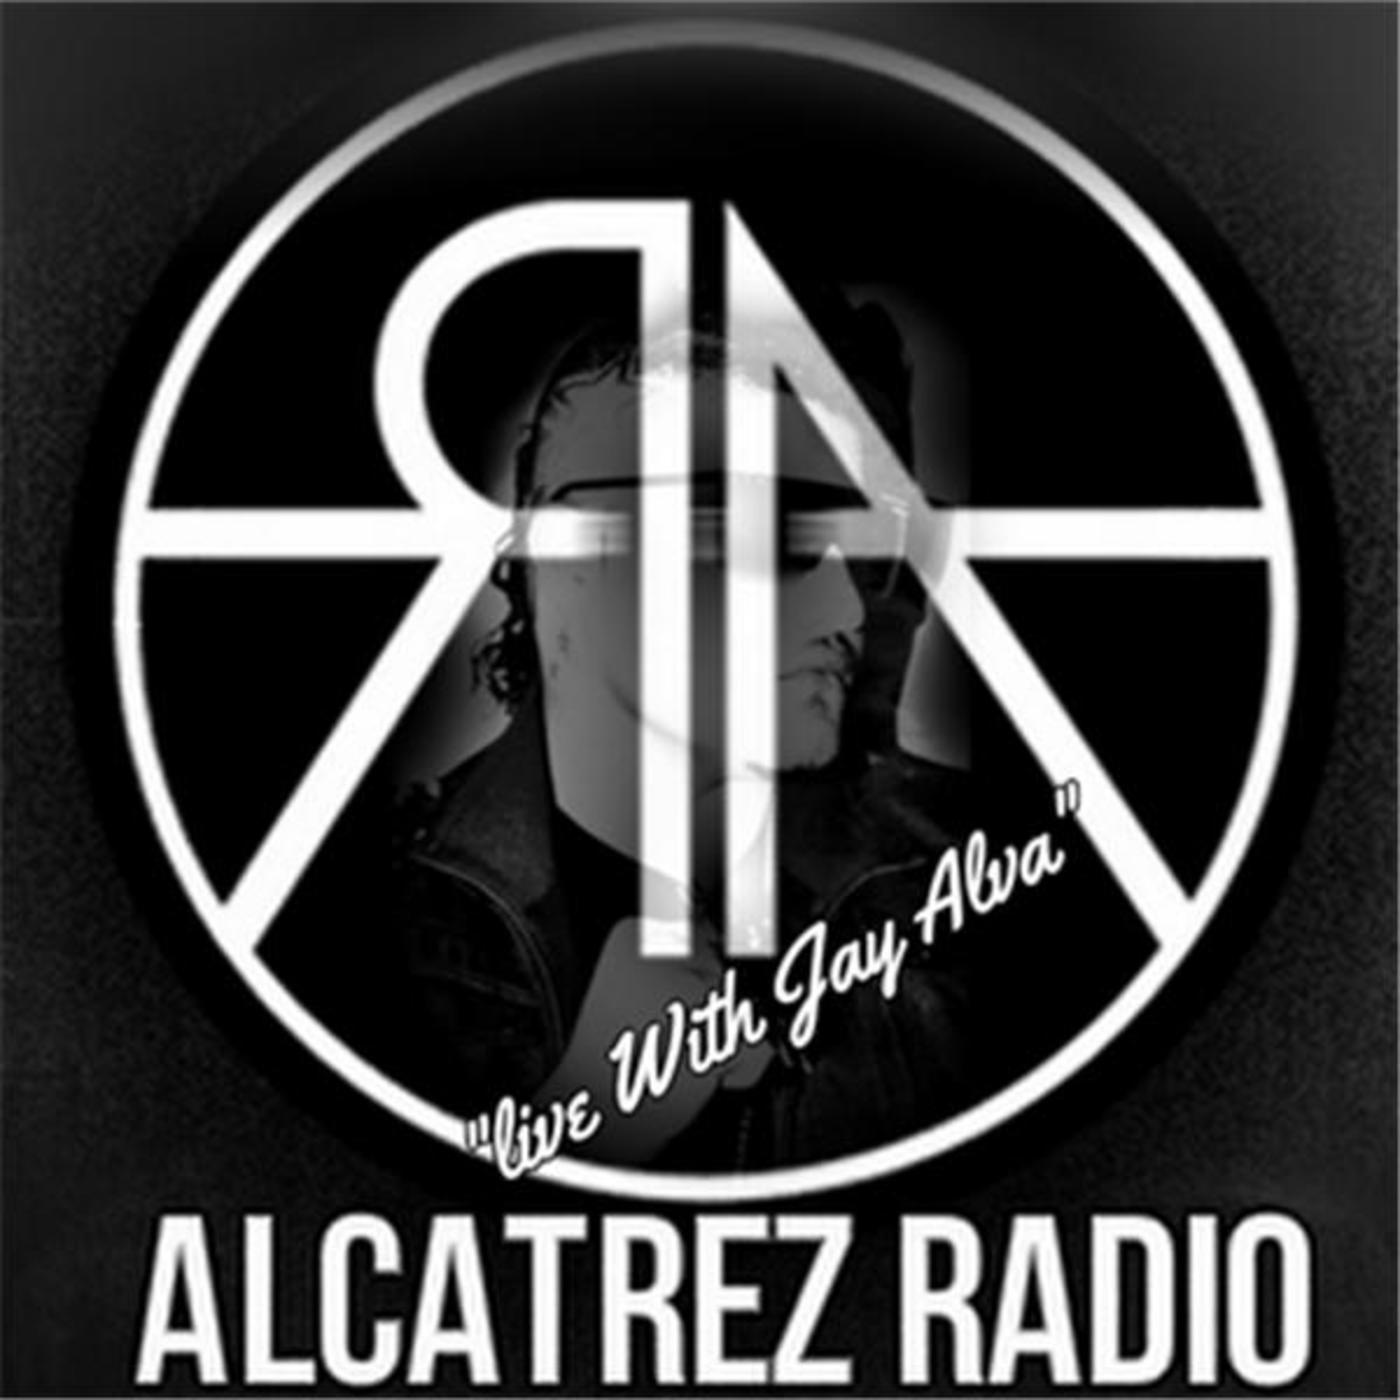 Alcatrez radio 